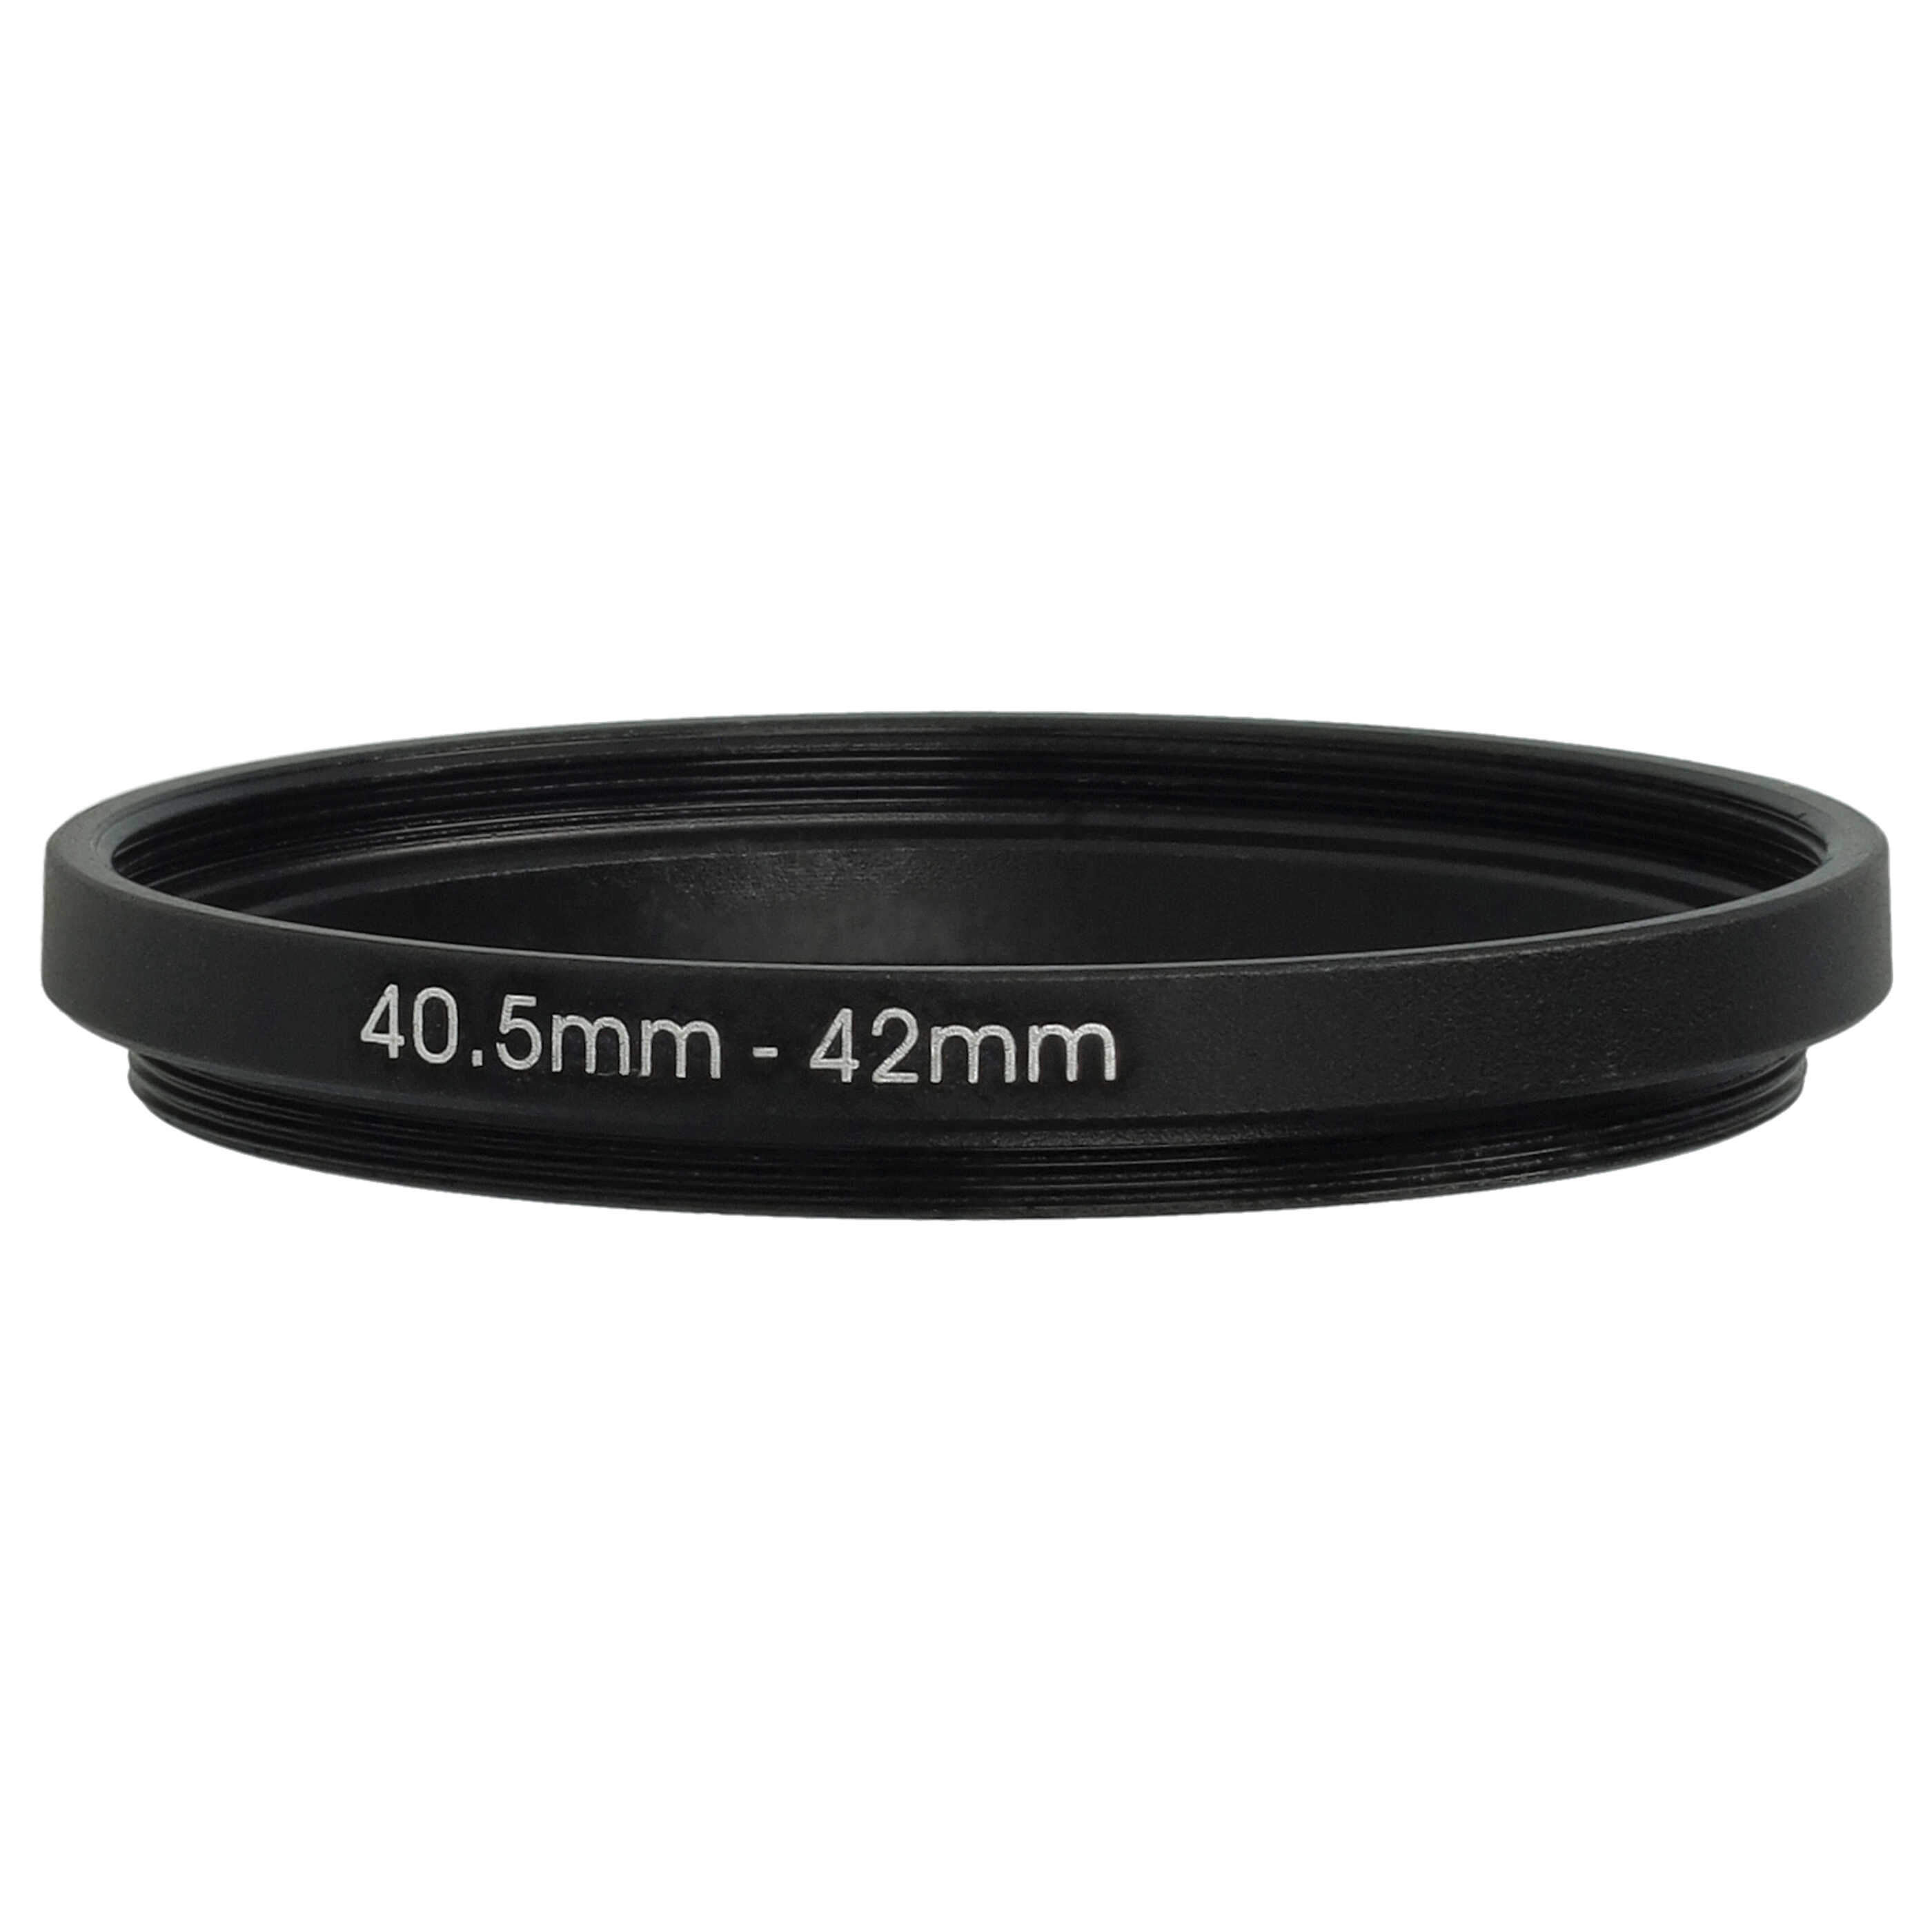 Step-Up-Ring Adapter 40,5 mm auf 42 mm passend für diverse Kamera-Objektive - Filteradapter